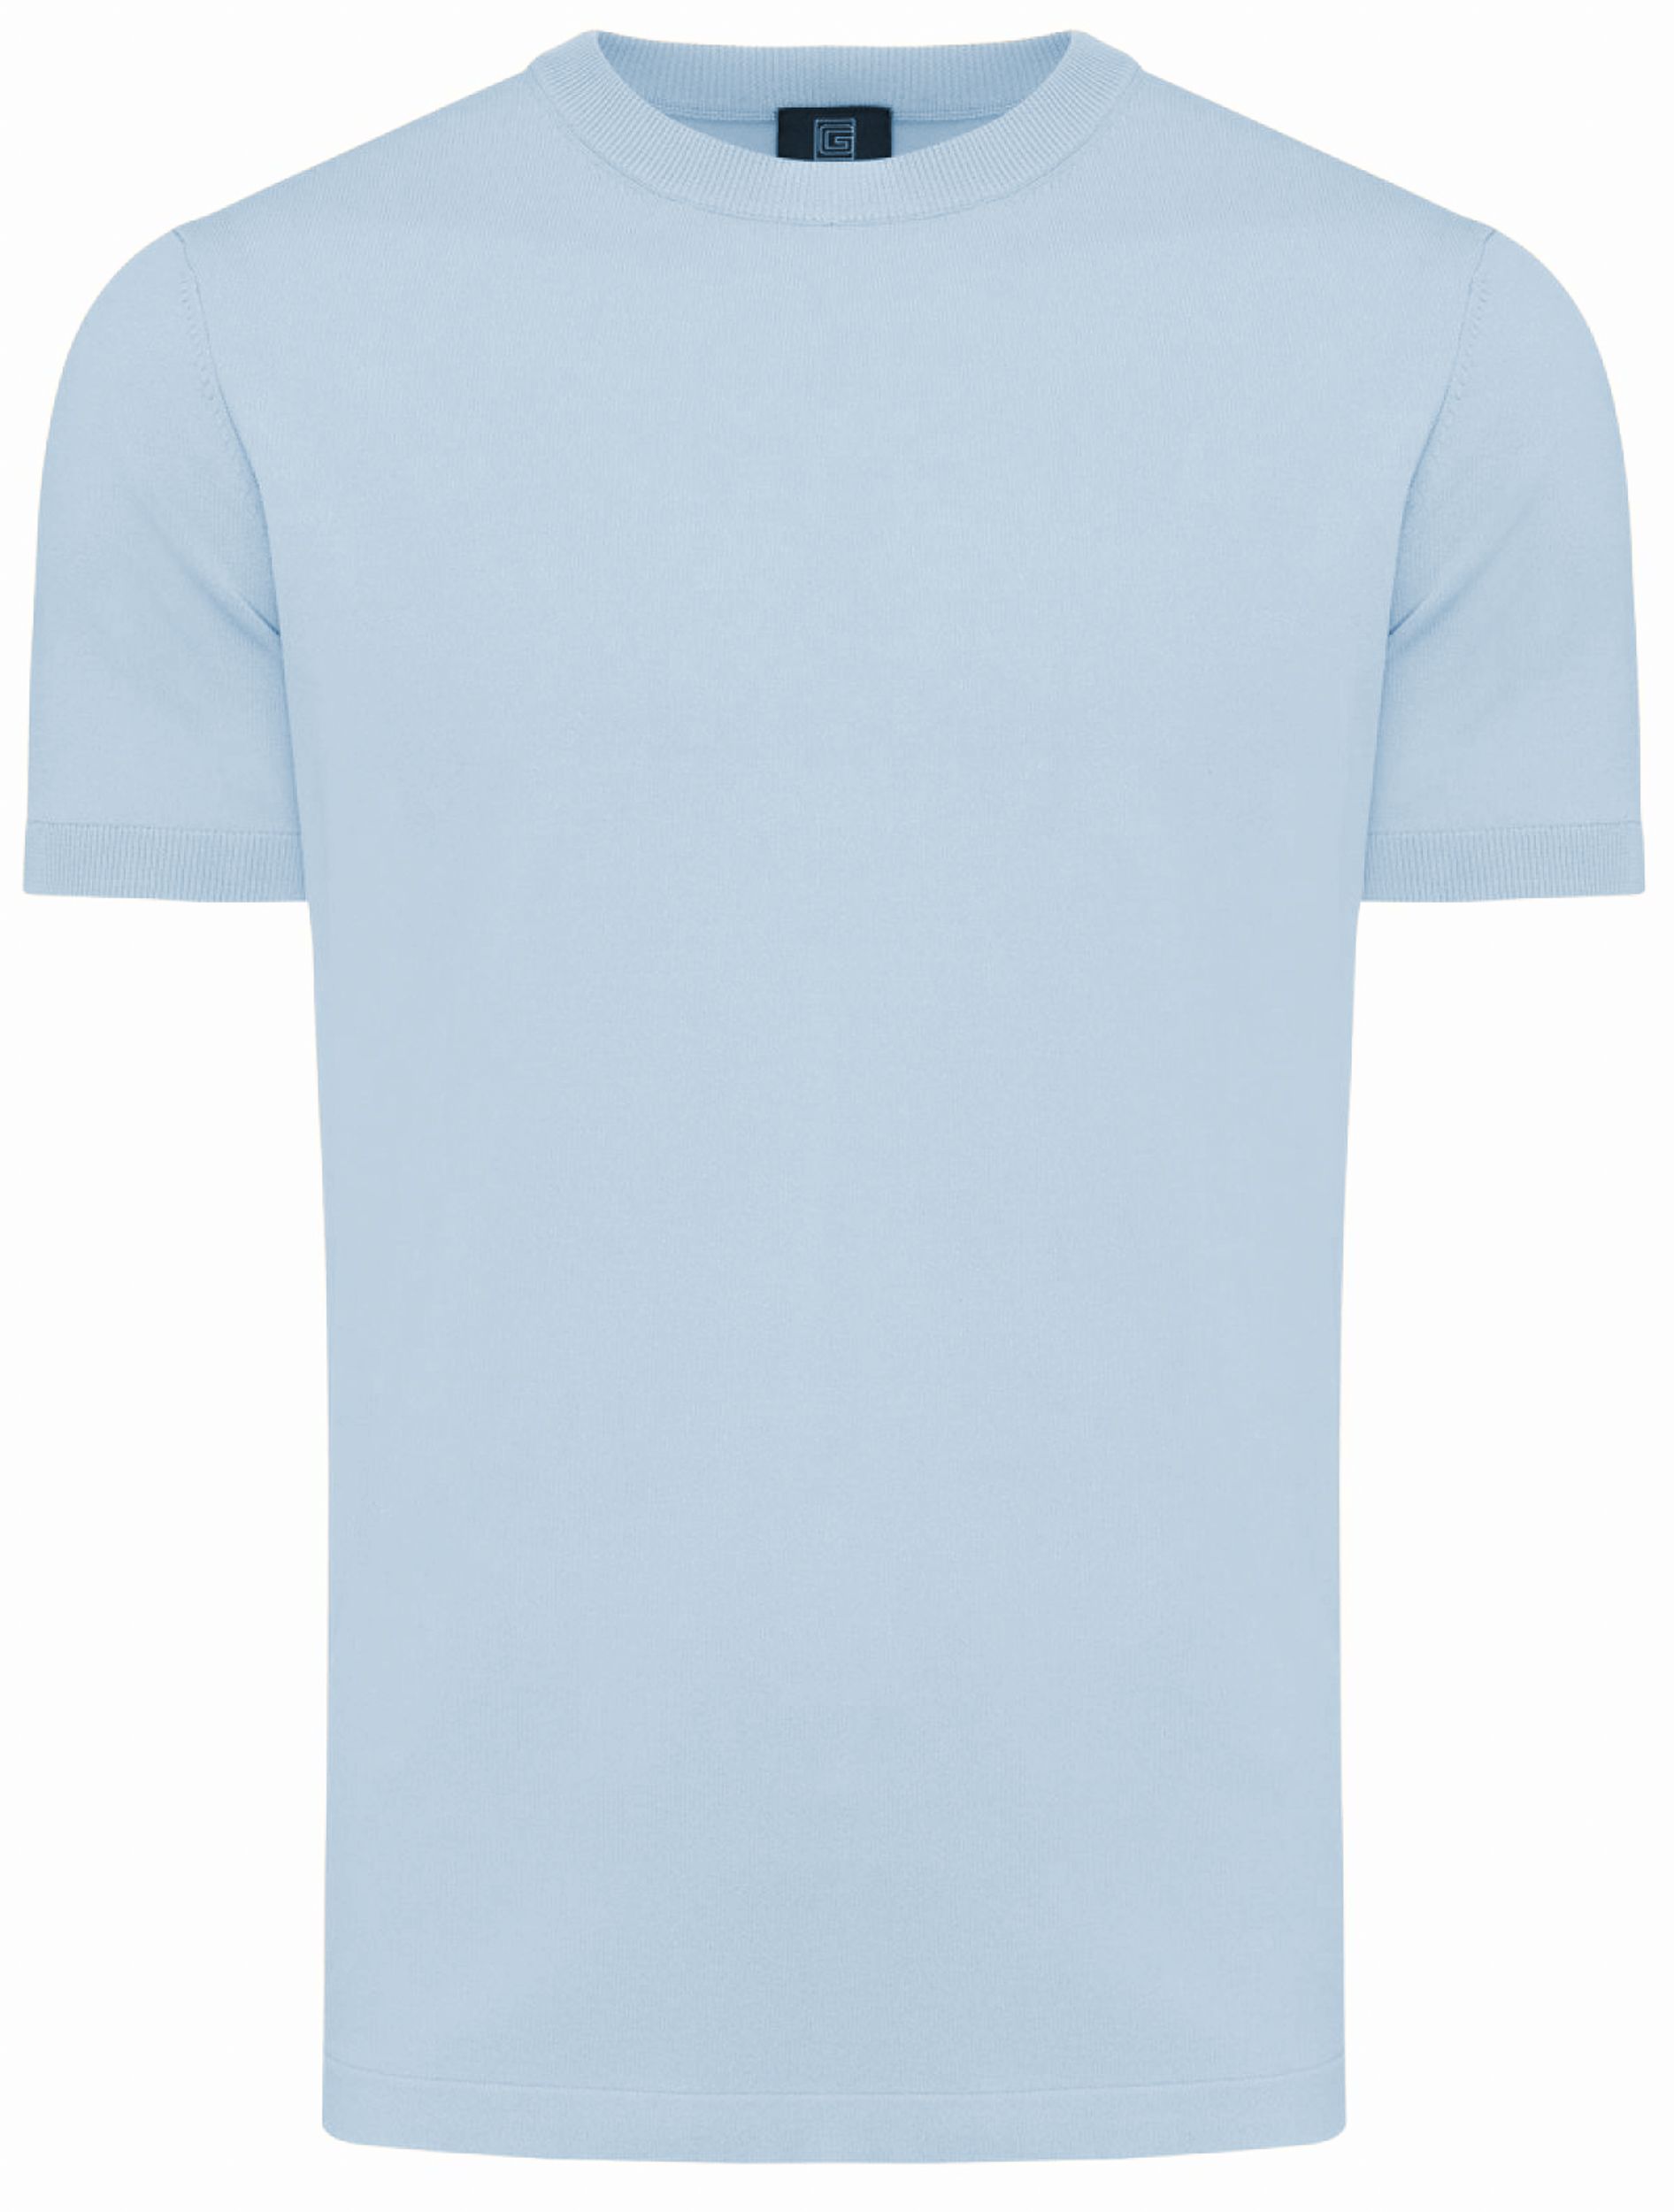 Genti T-shirt KM Licht blauw 092160-001-L